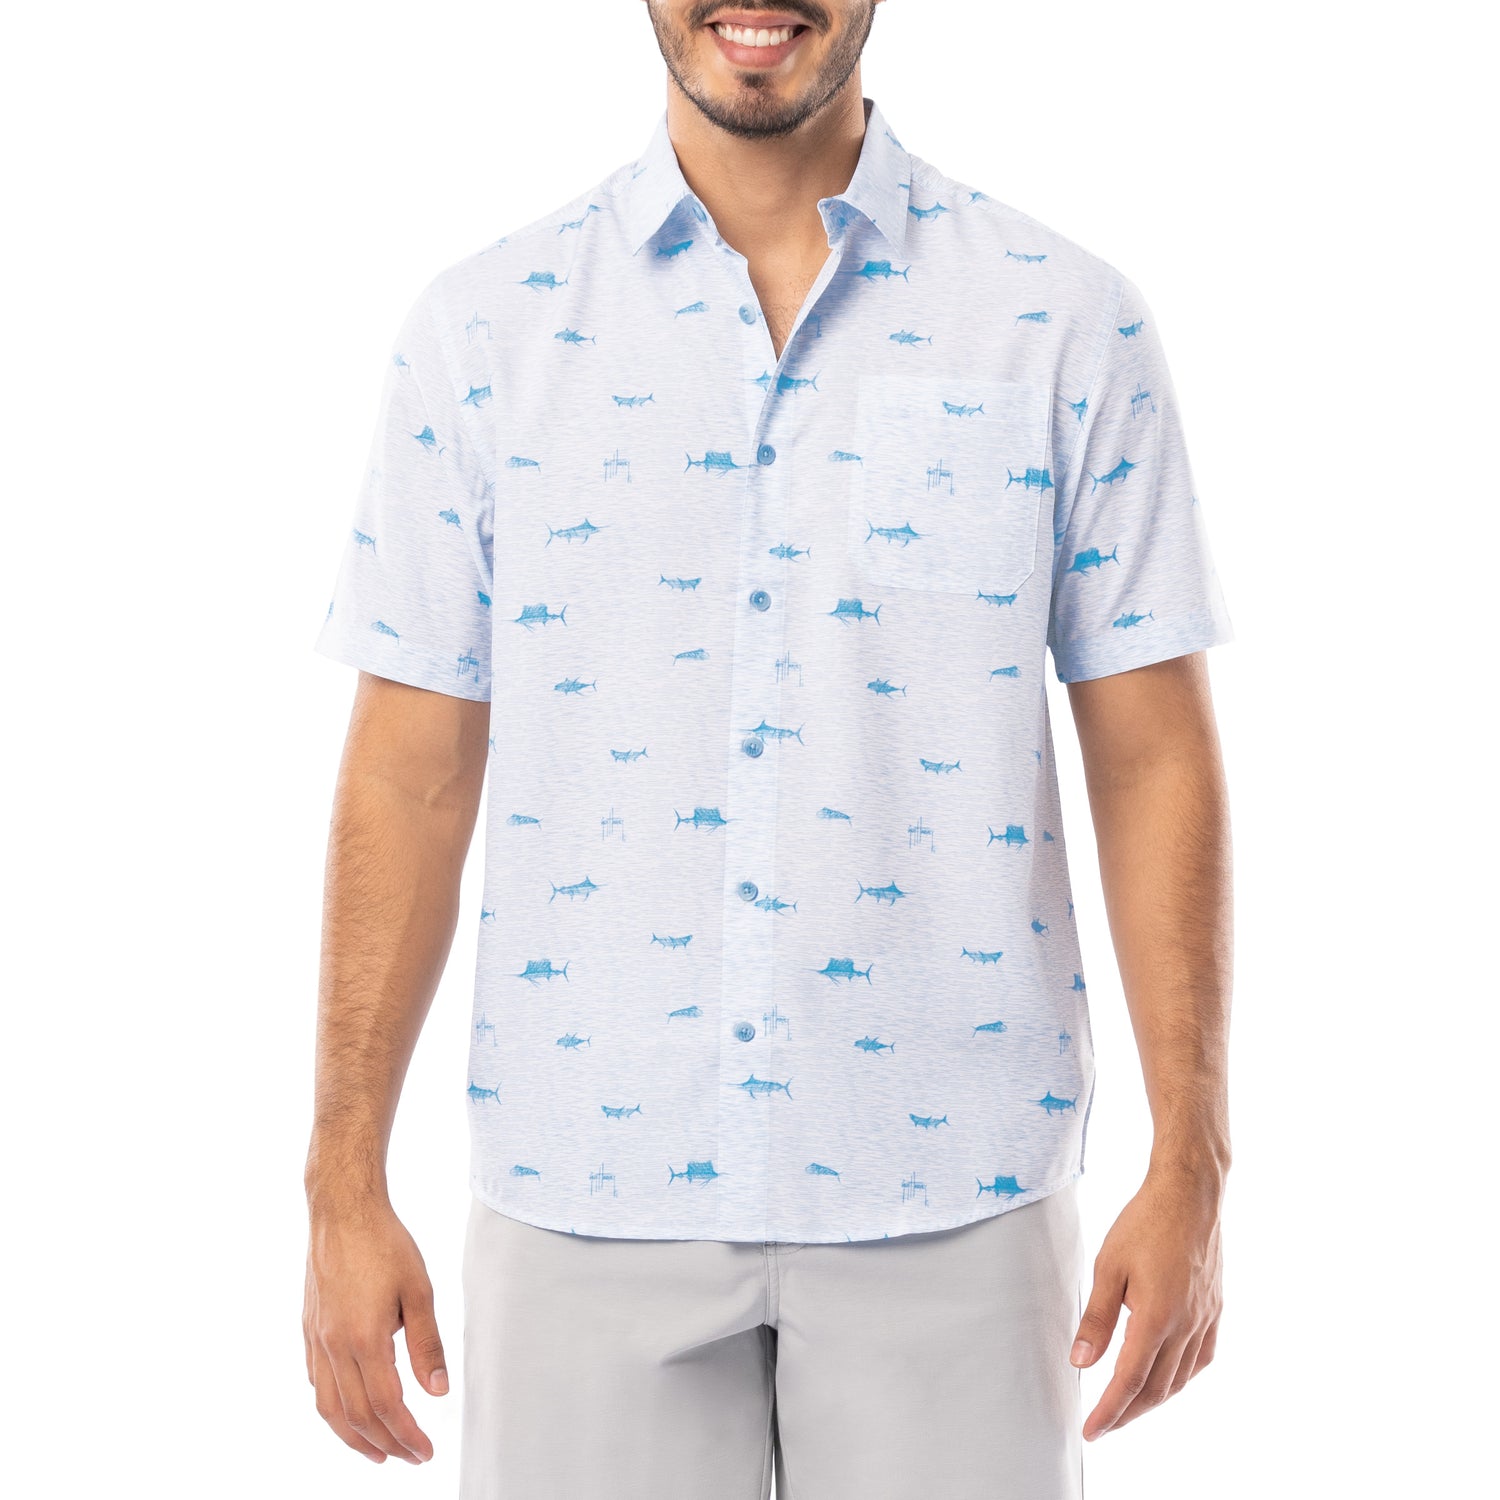 Men's Button Down Fishing Shirts